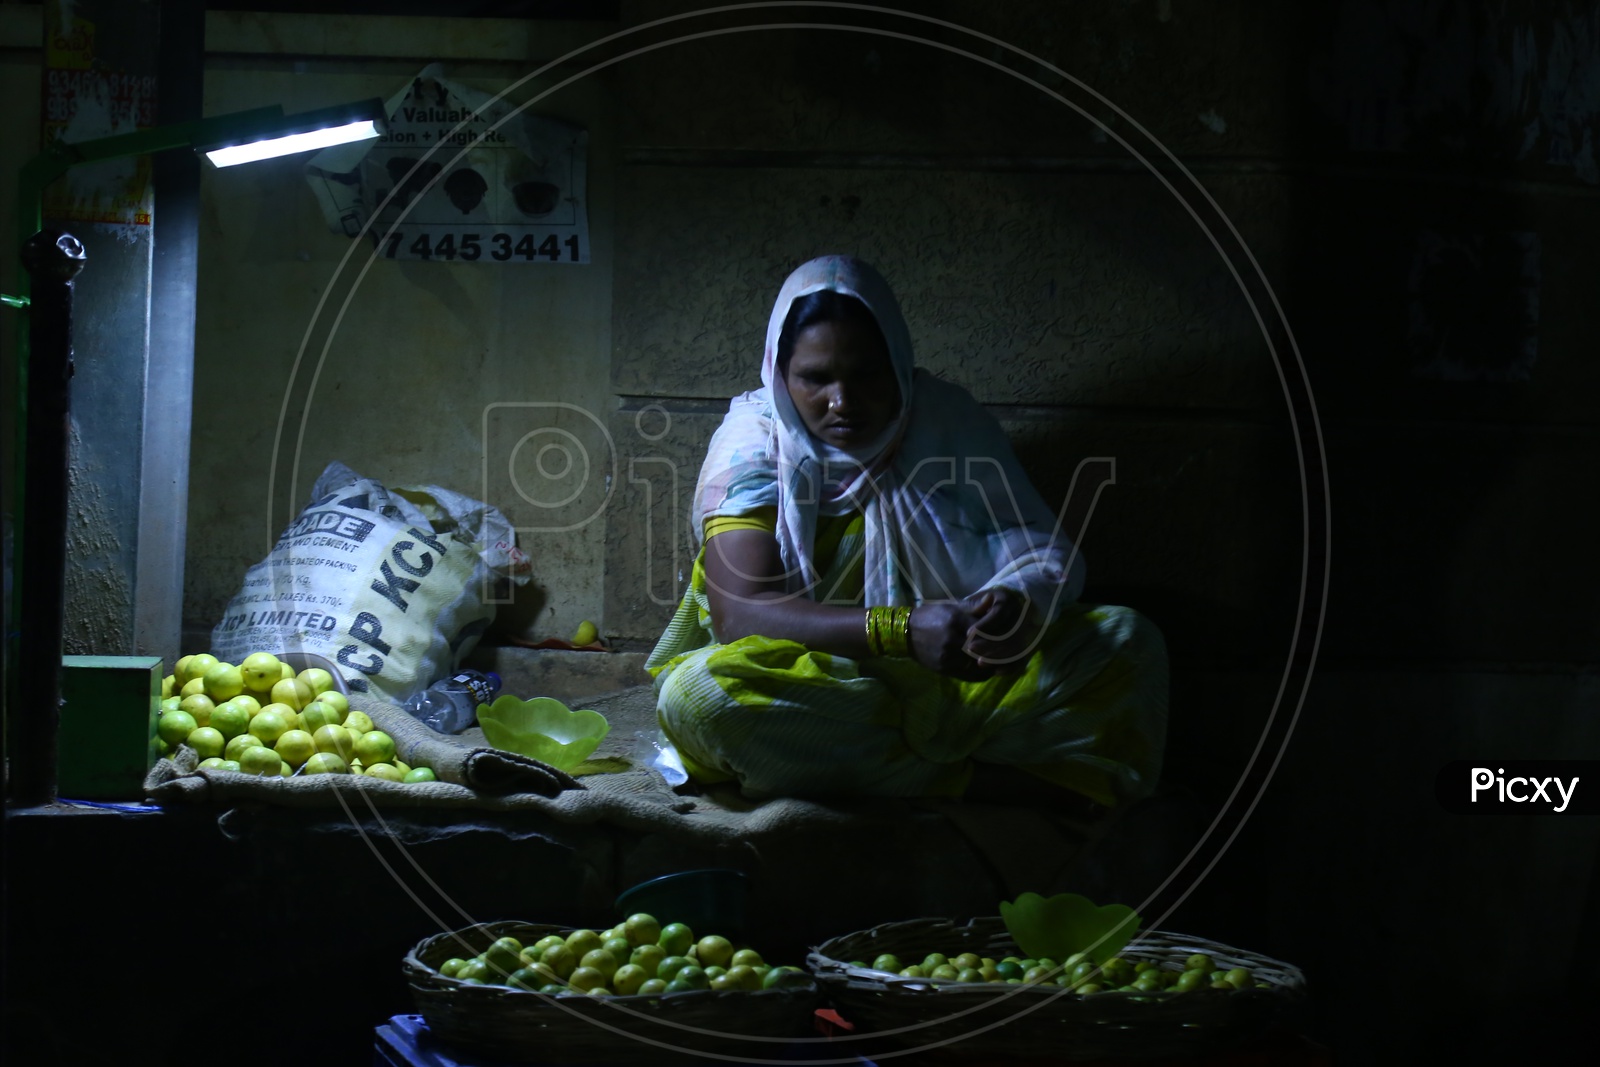 Woman Selling Lemons in Market